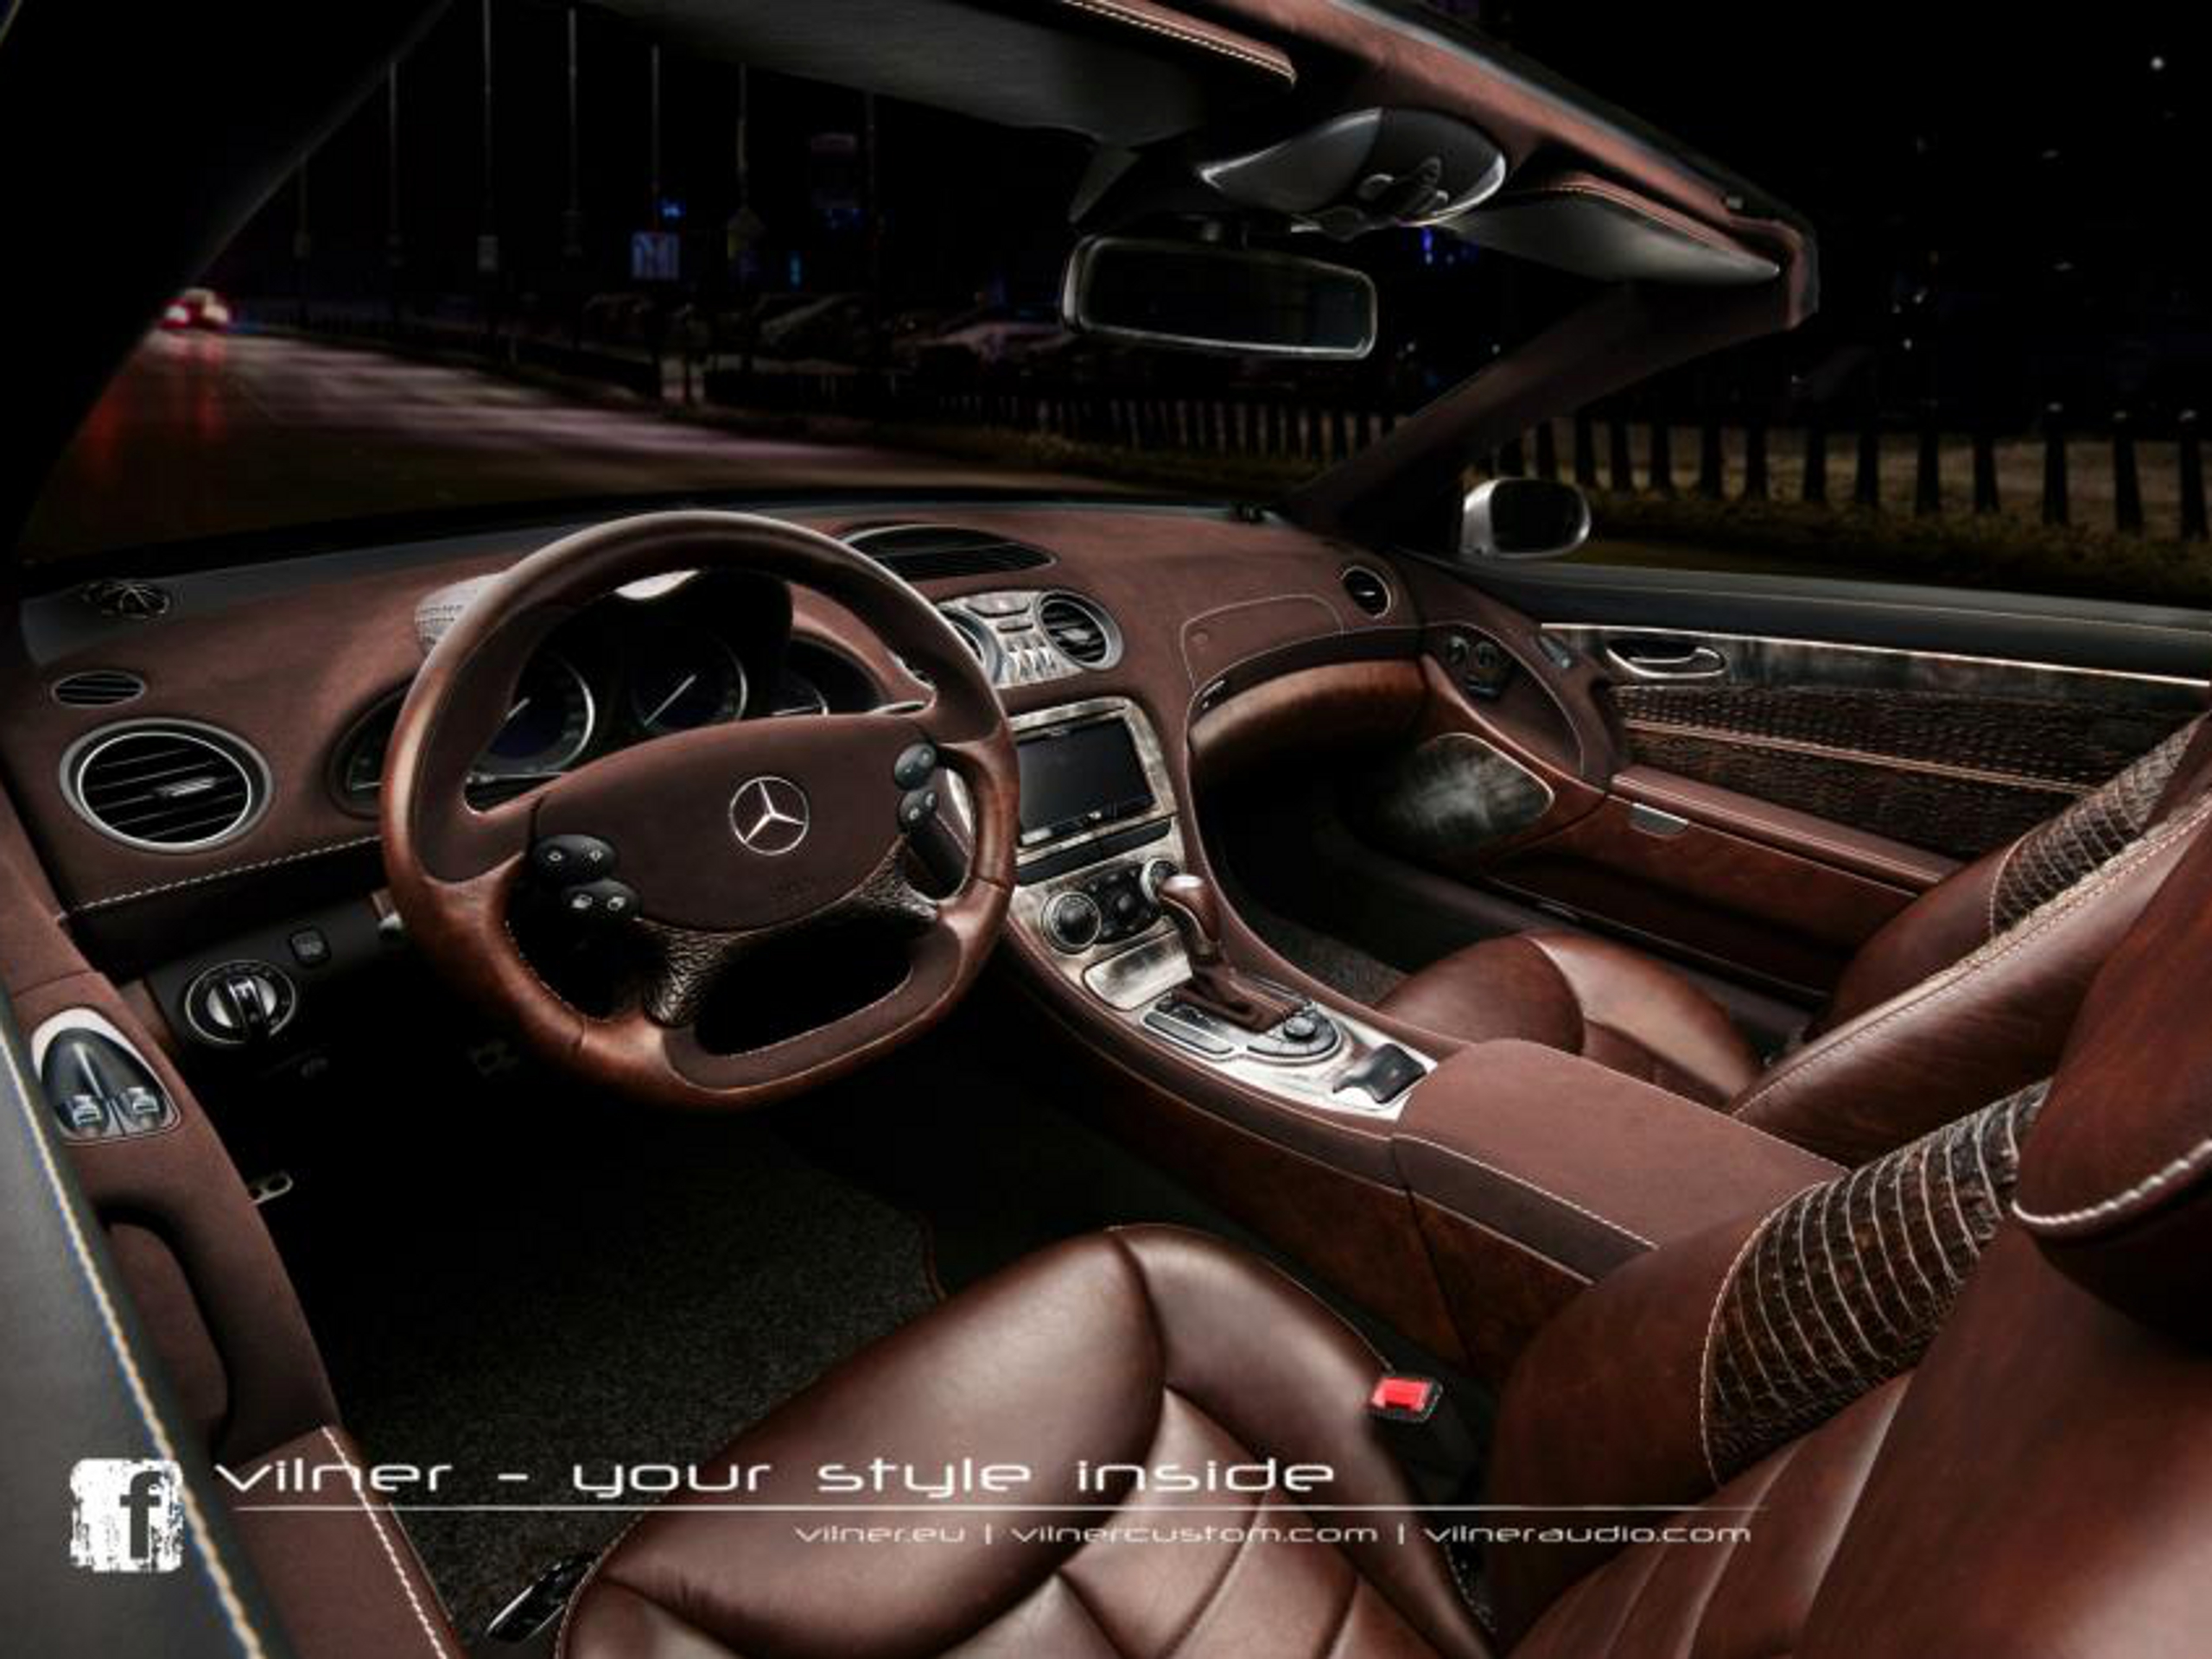 Innenraum-Tuner Vilner zeigt Leder-Interieur für Mercedes SL